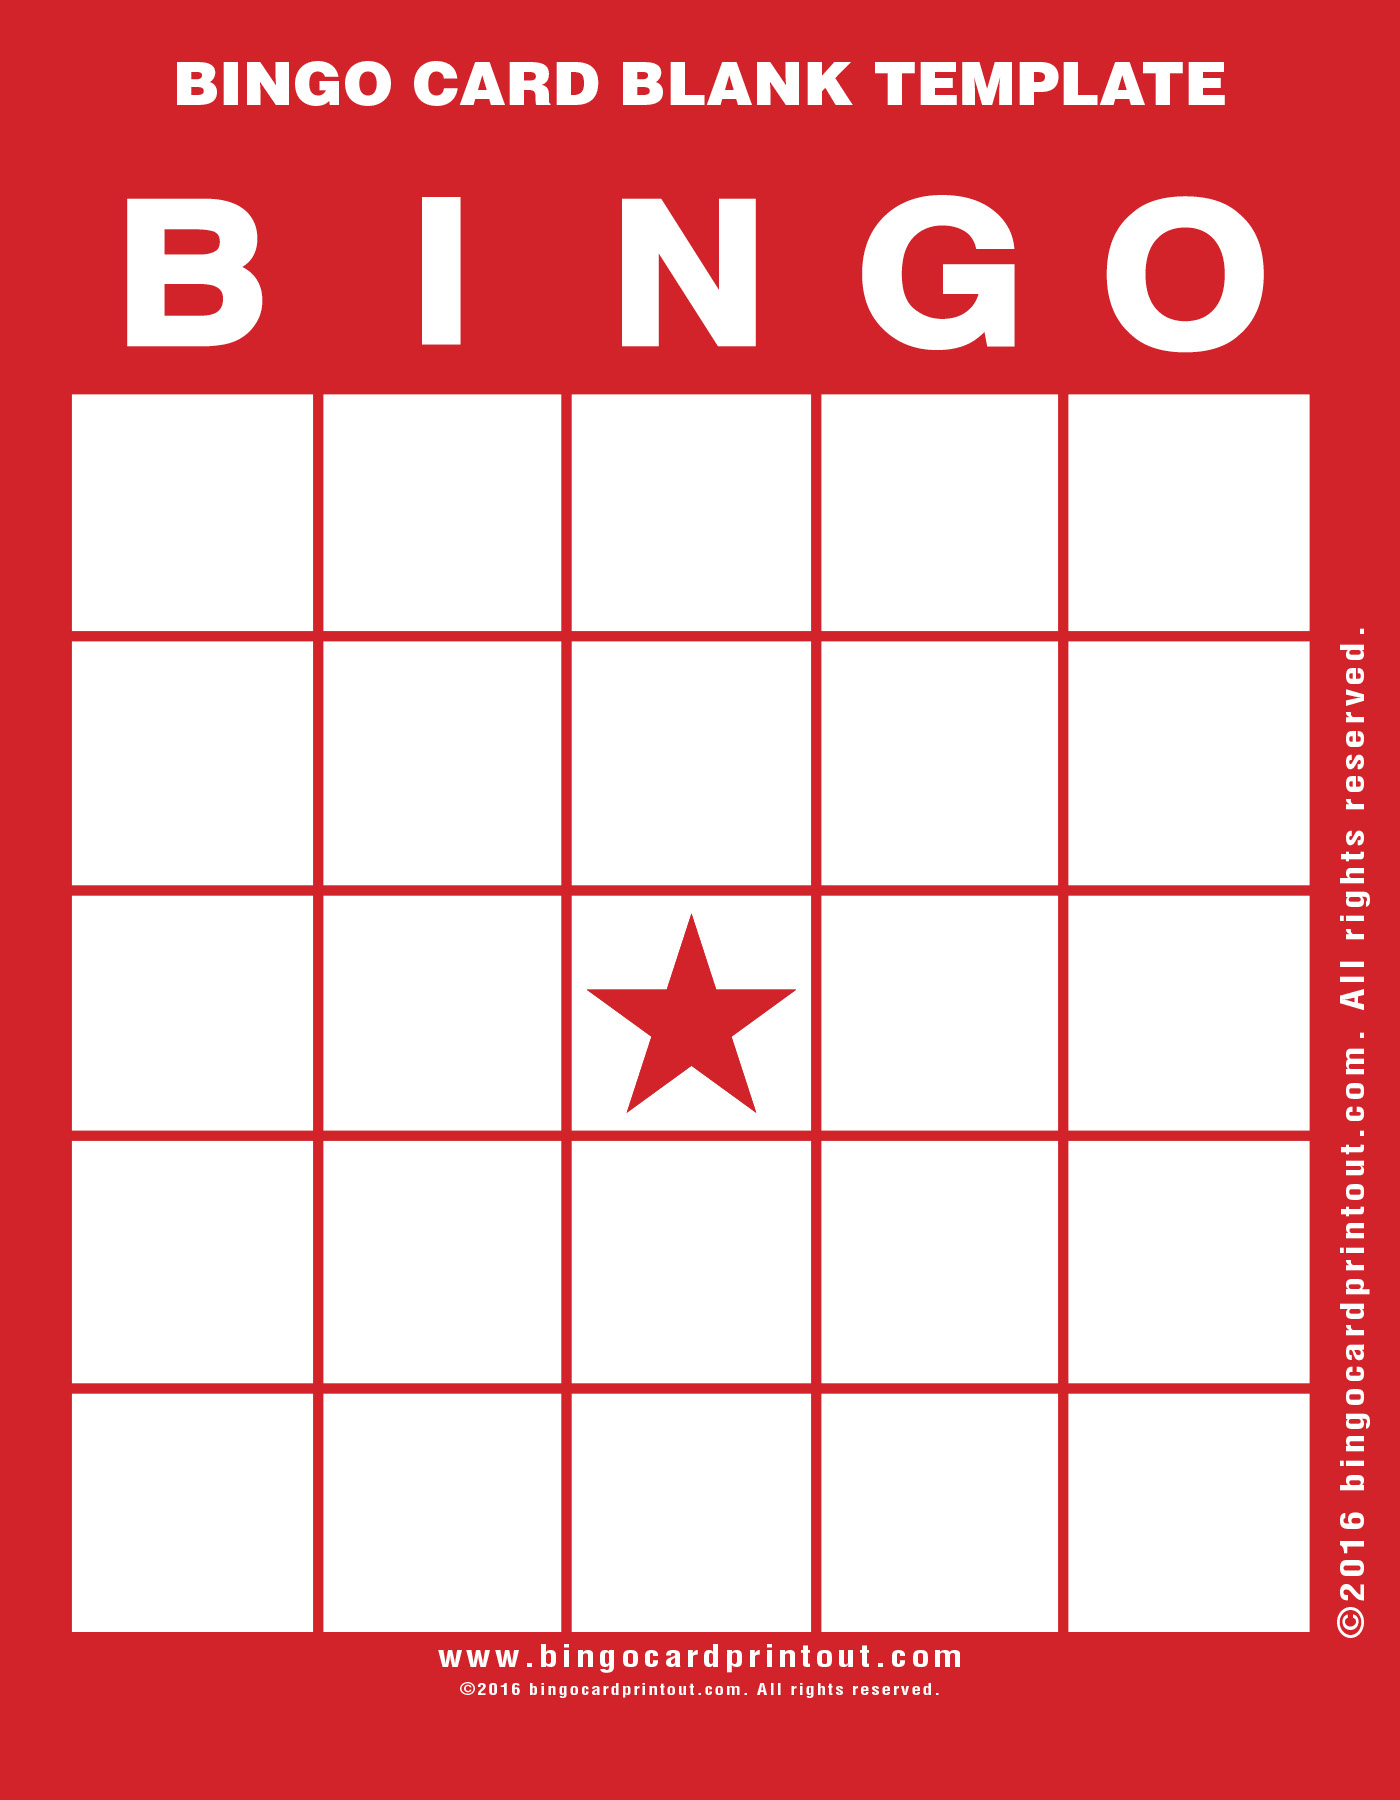 Bingo Card Blank Template - Bingocardprintout